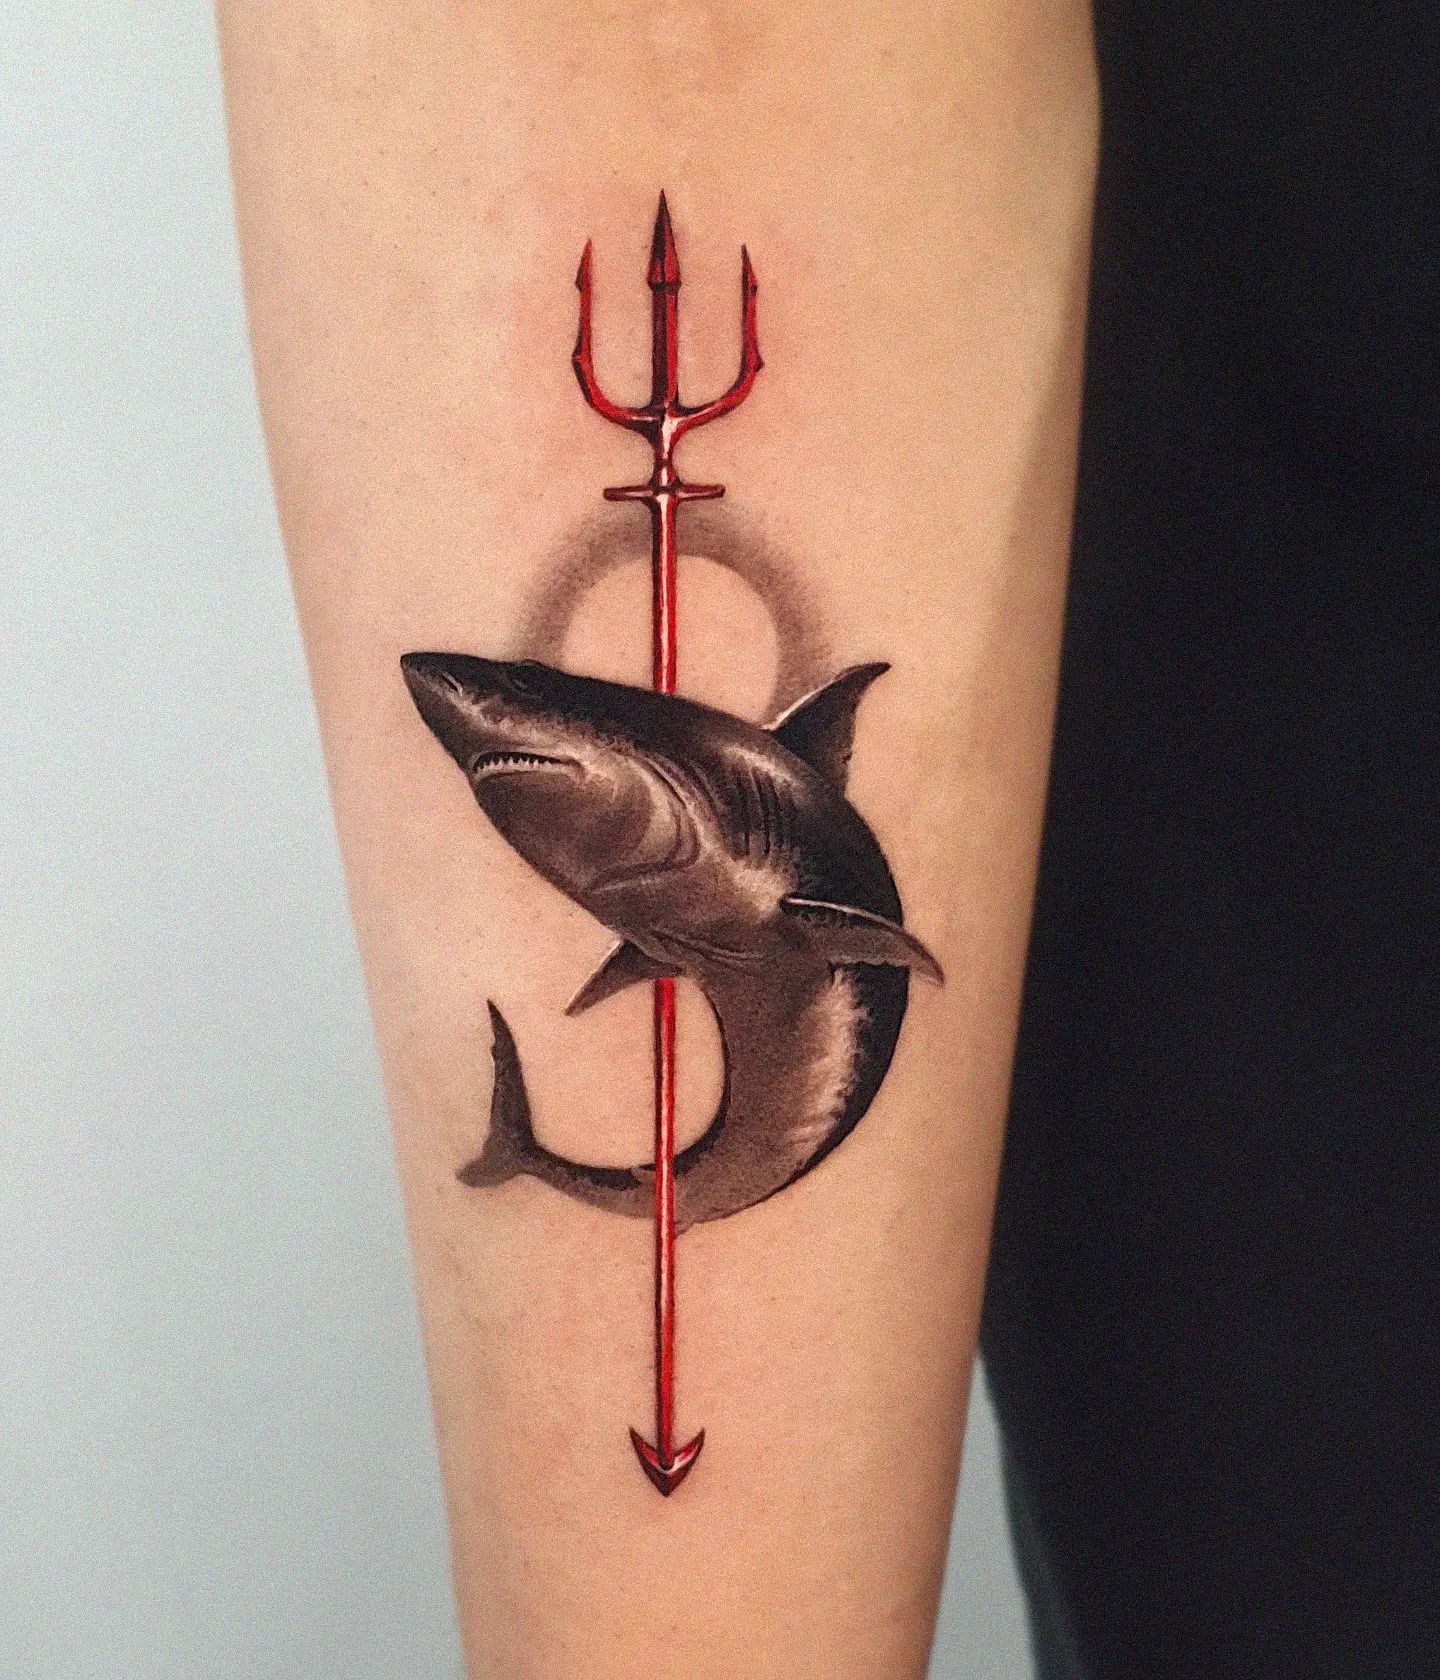 Shark Tattoo Grinning - Tattoo Ideas and Designs | Tattoos.ai